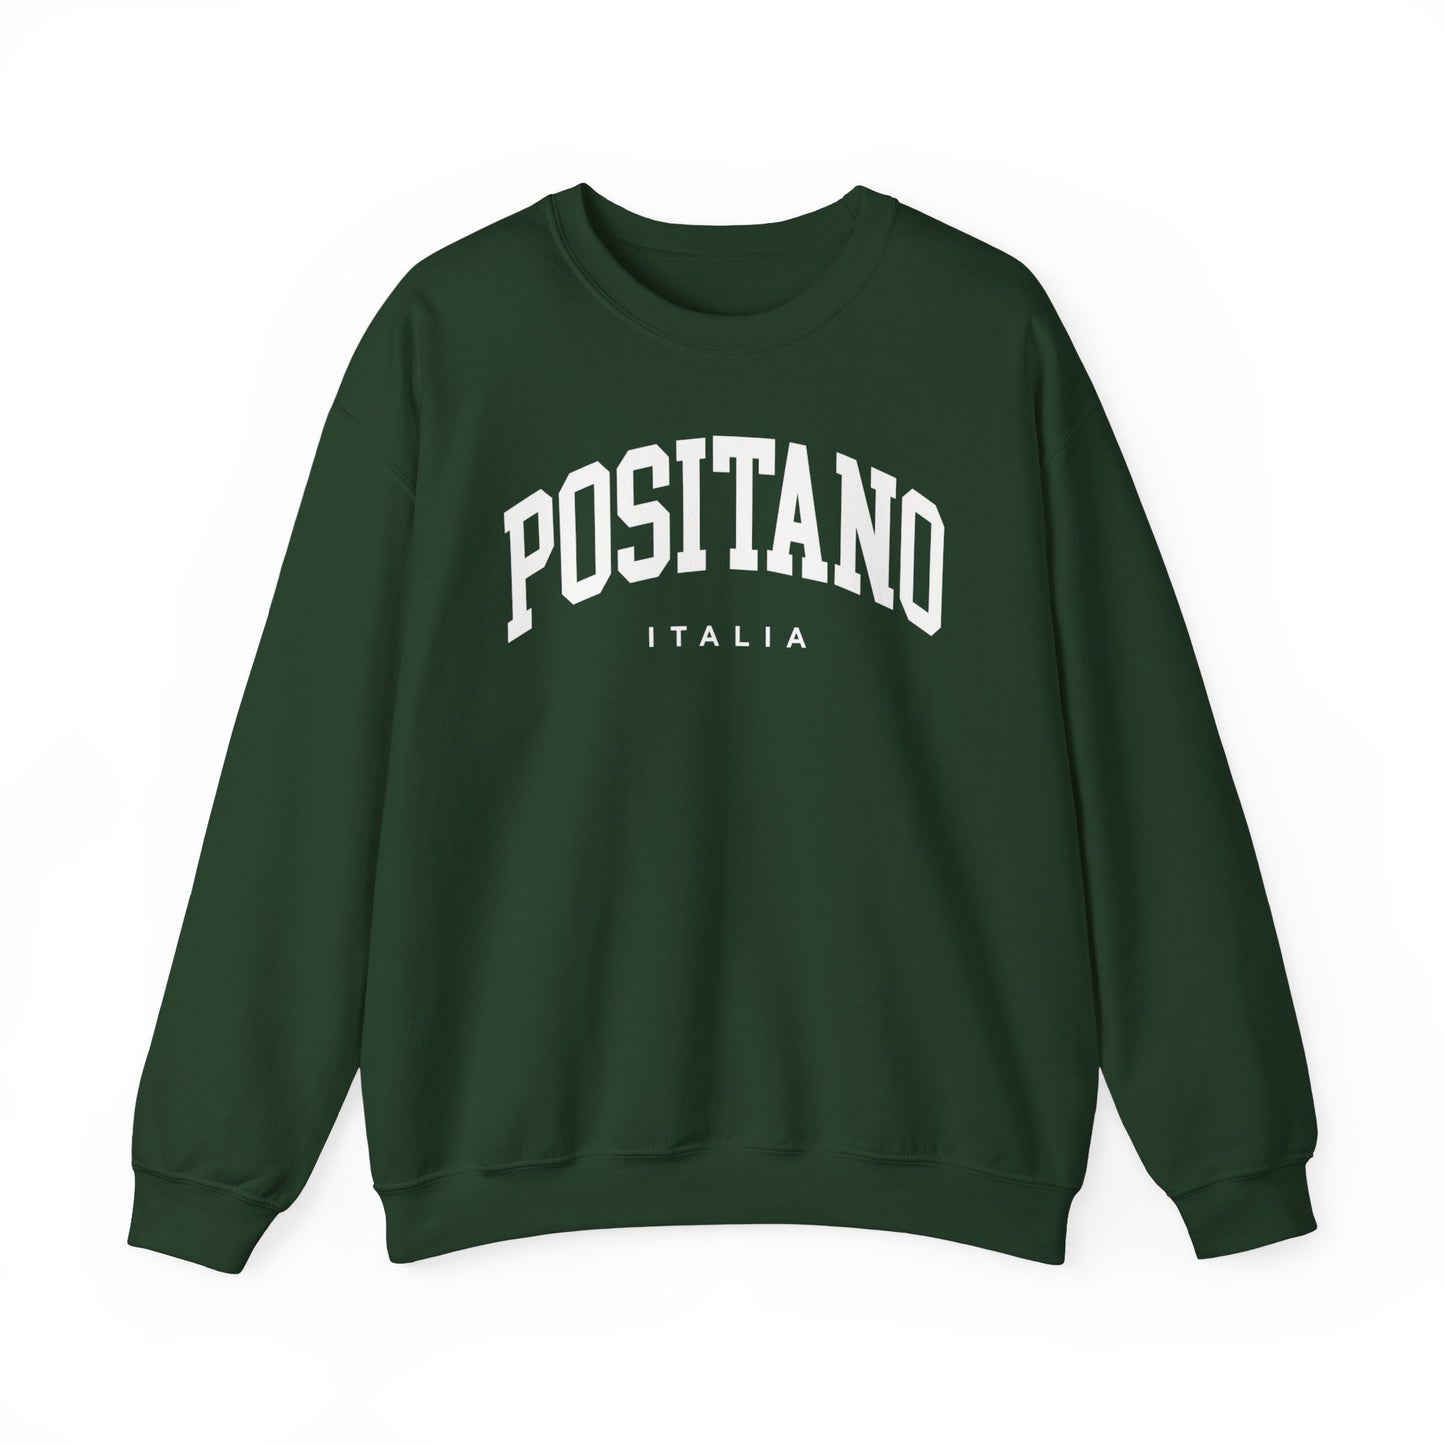 Positano Italy Sweatshirt